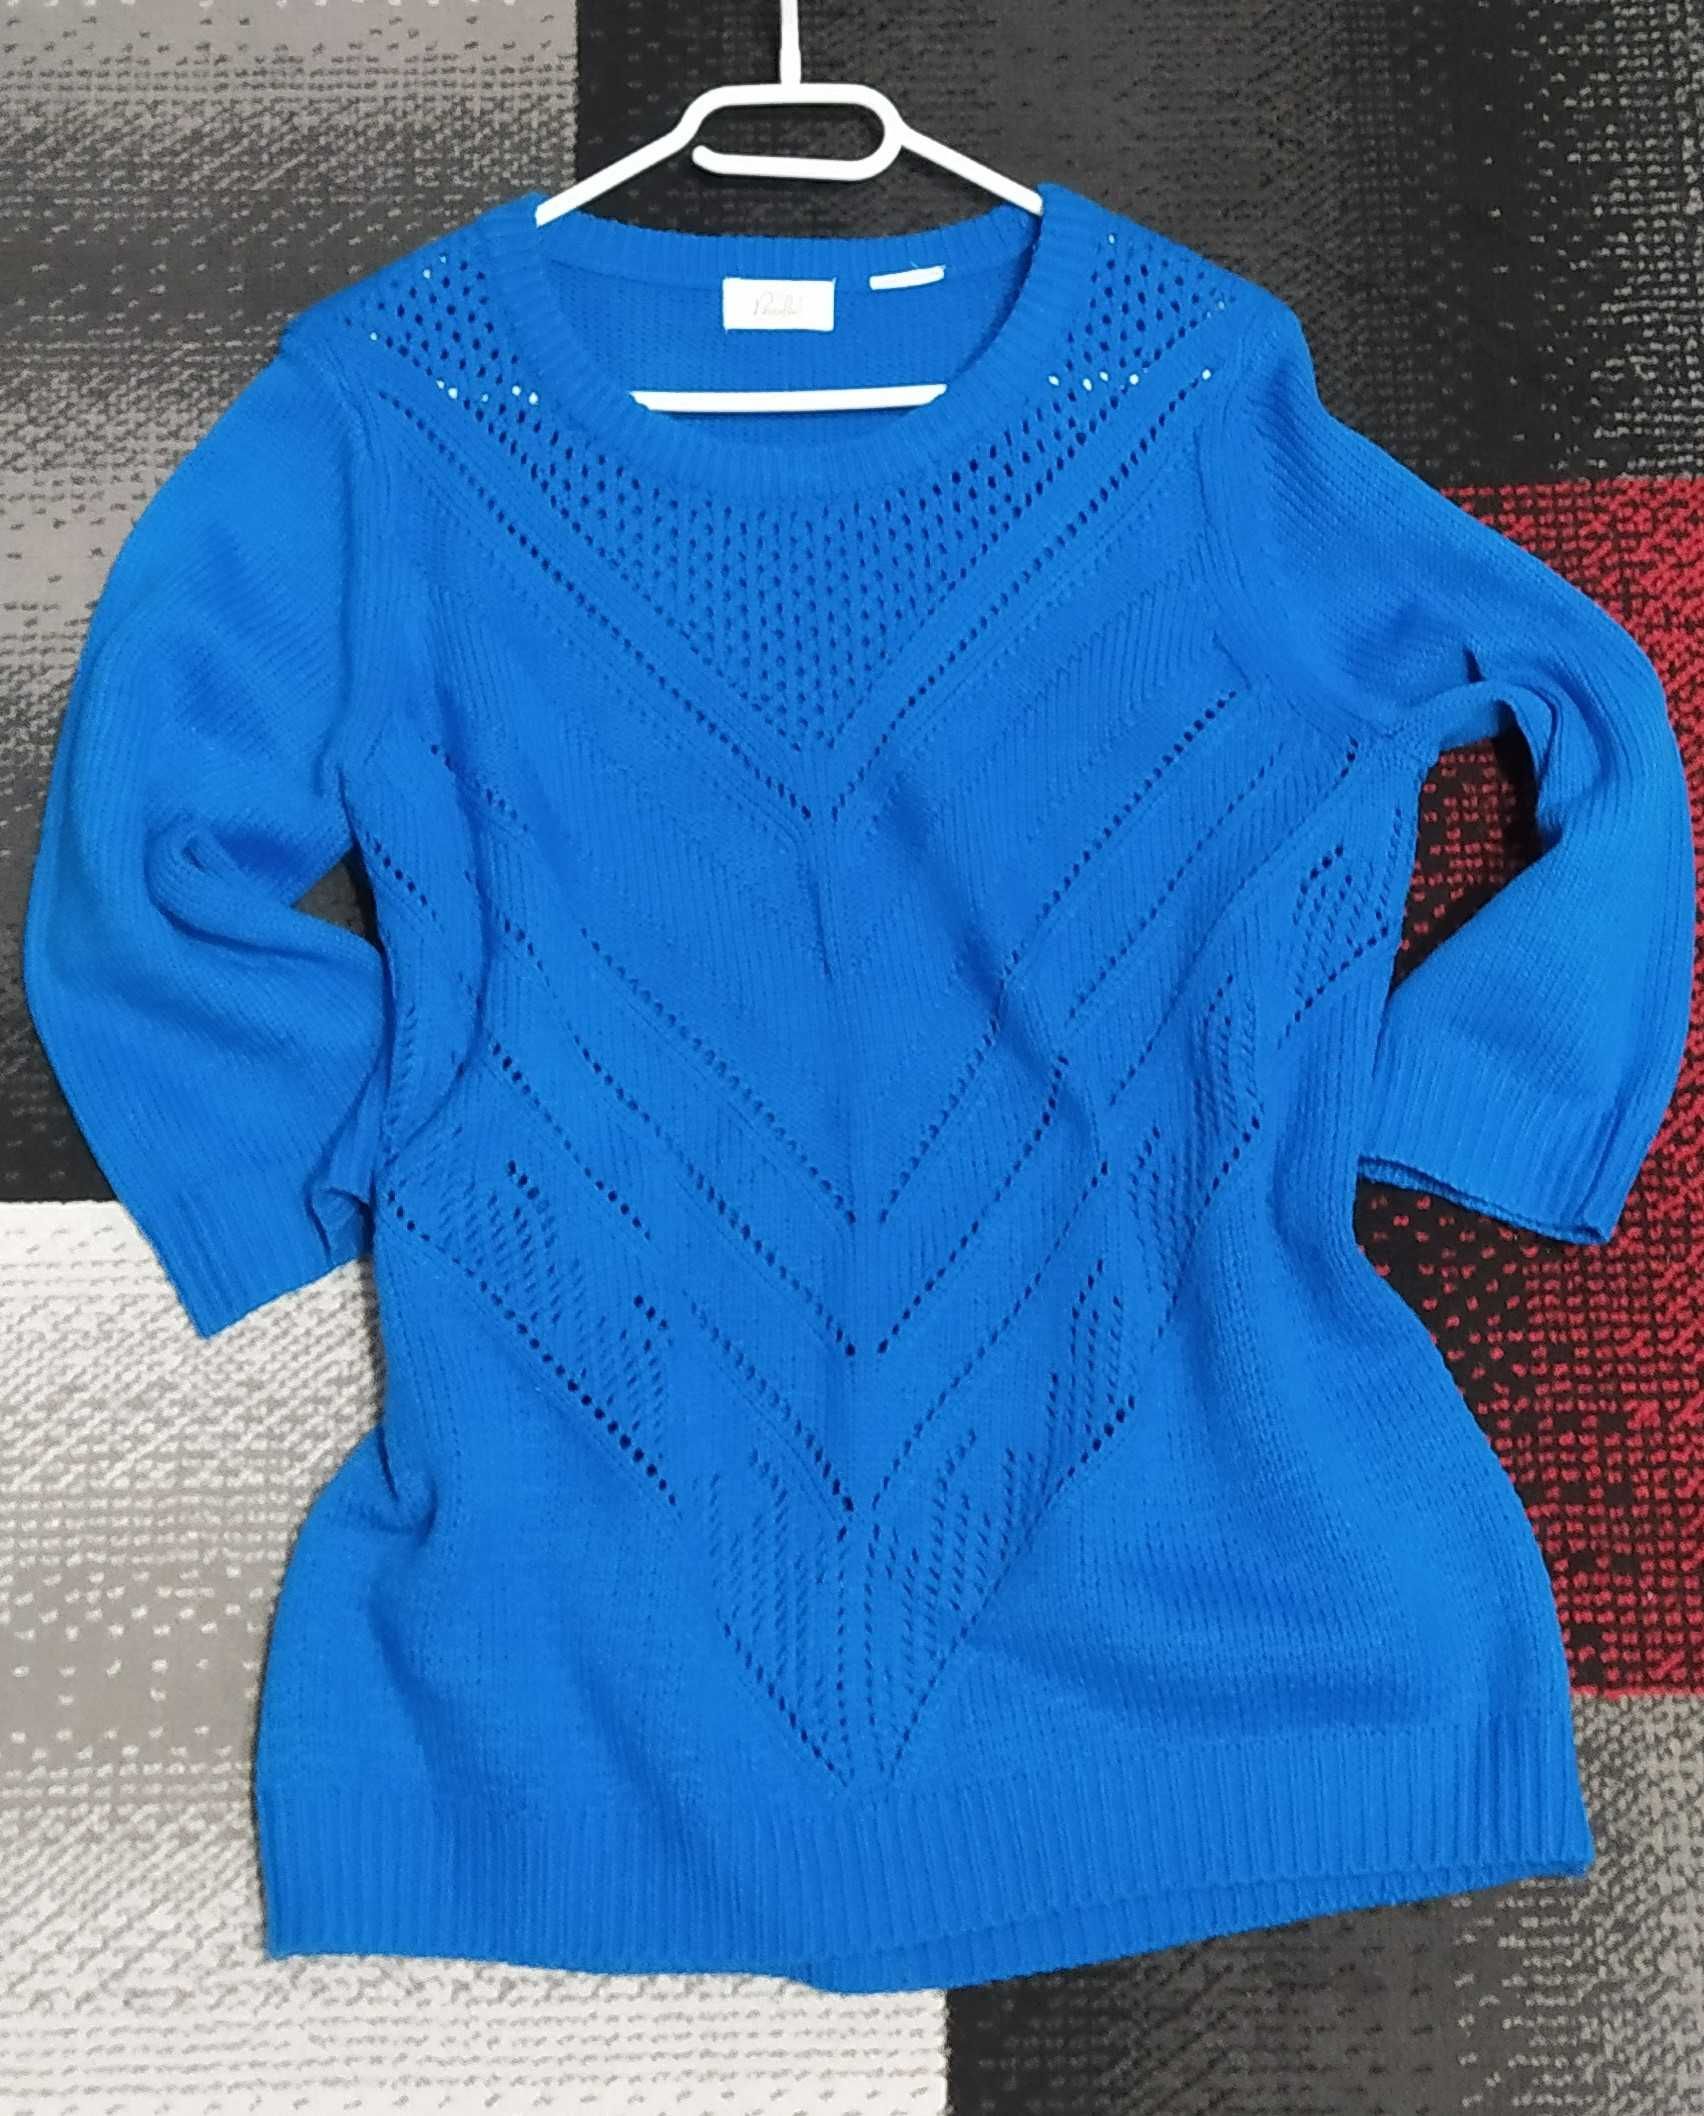 Ażurowy błękitny sweterek r. L/XL